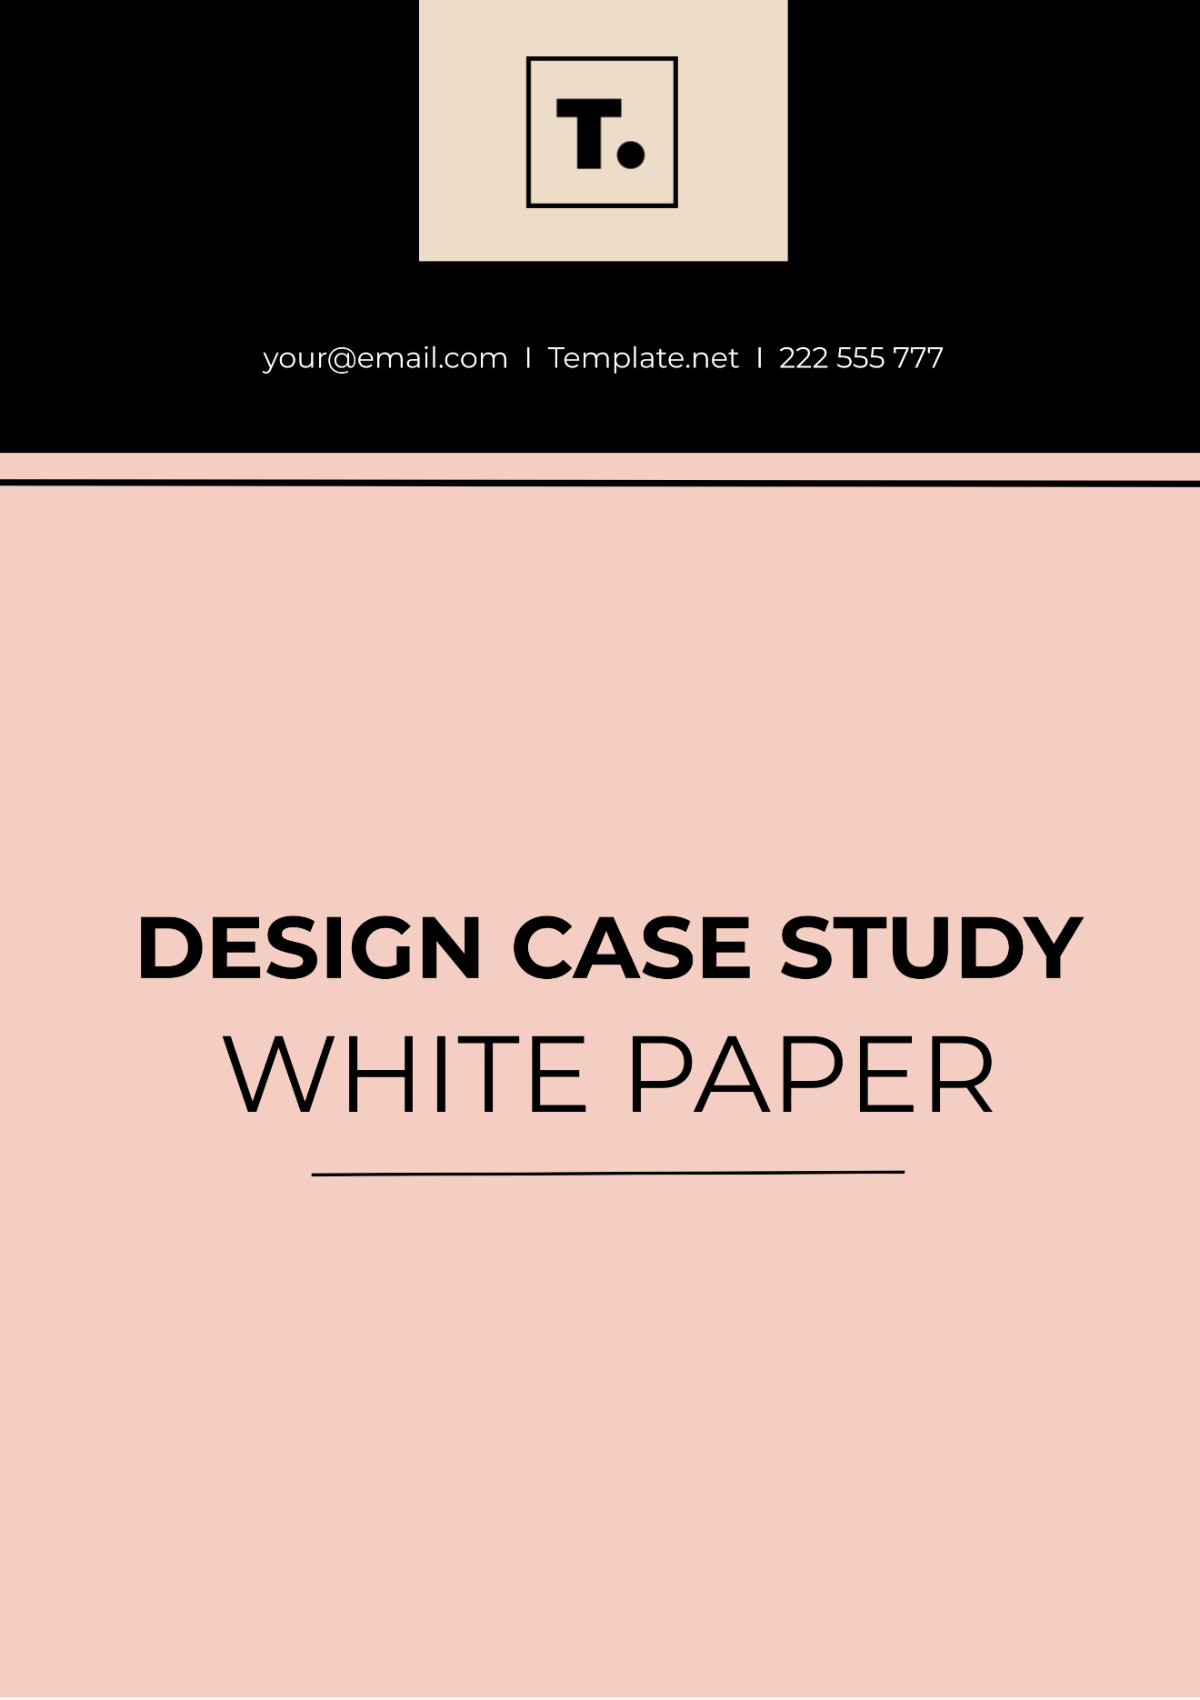 Design Case Study White Paper Template